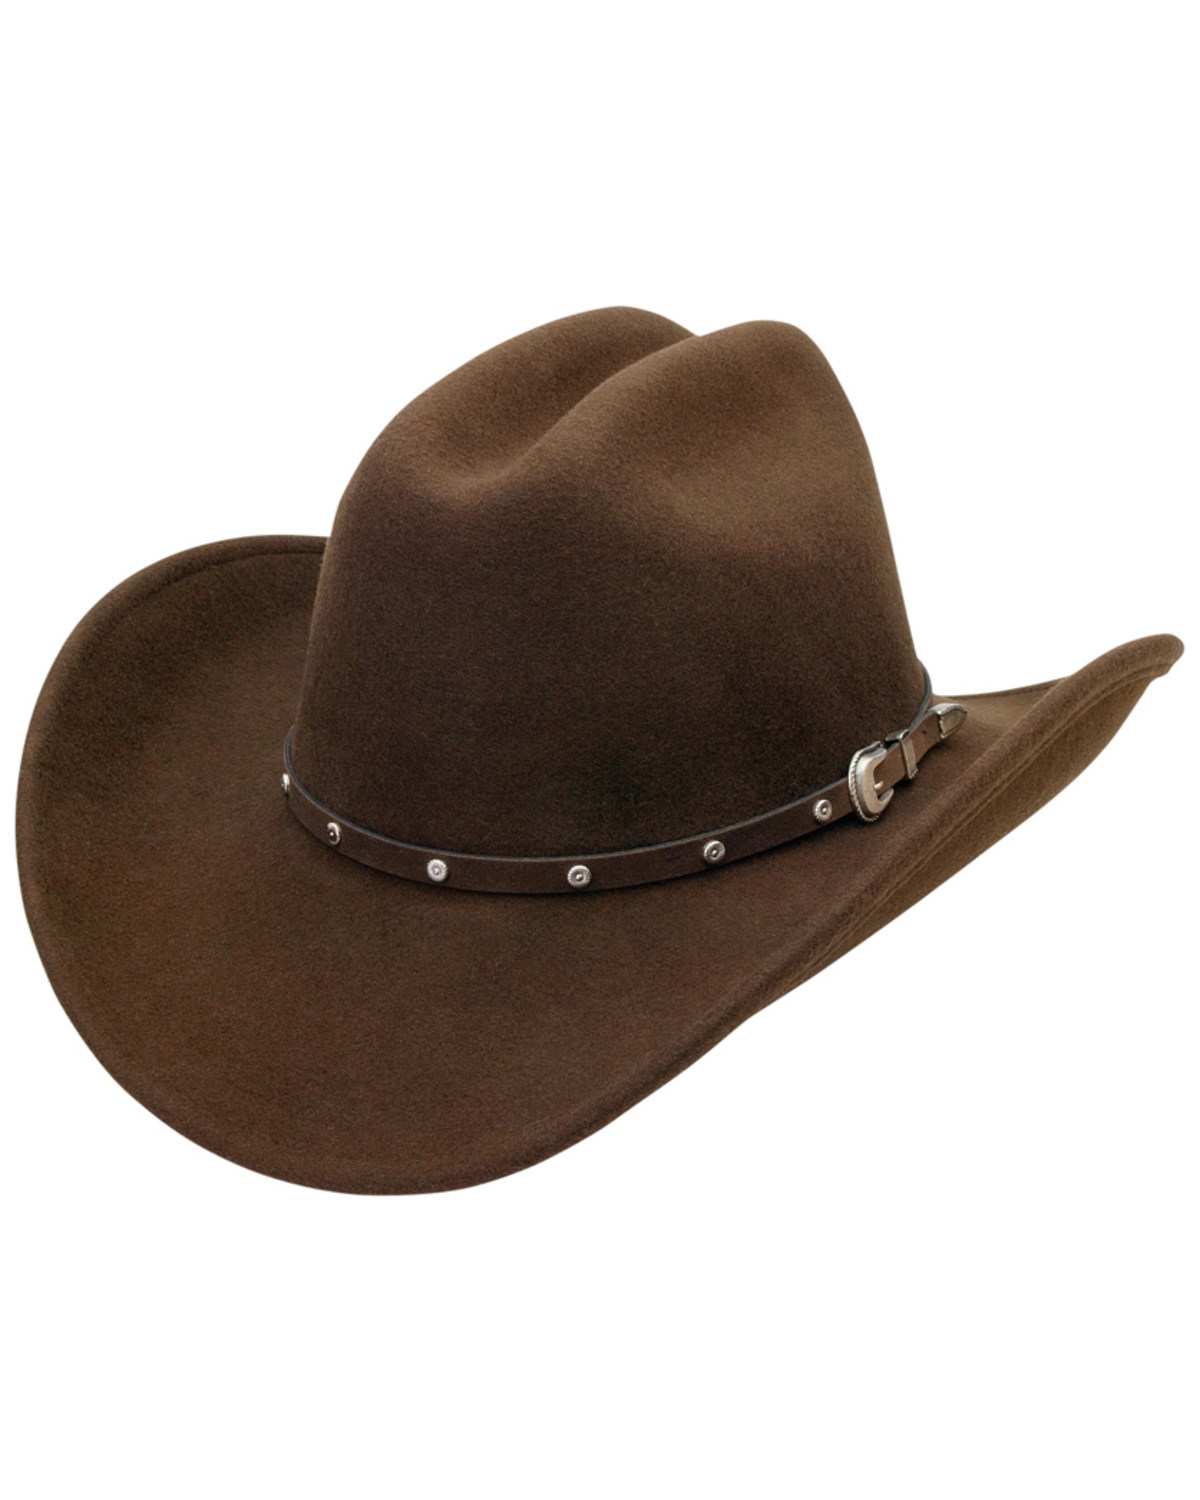 Silverado Crushable Felt Western Fashion Hat